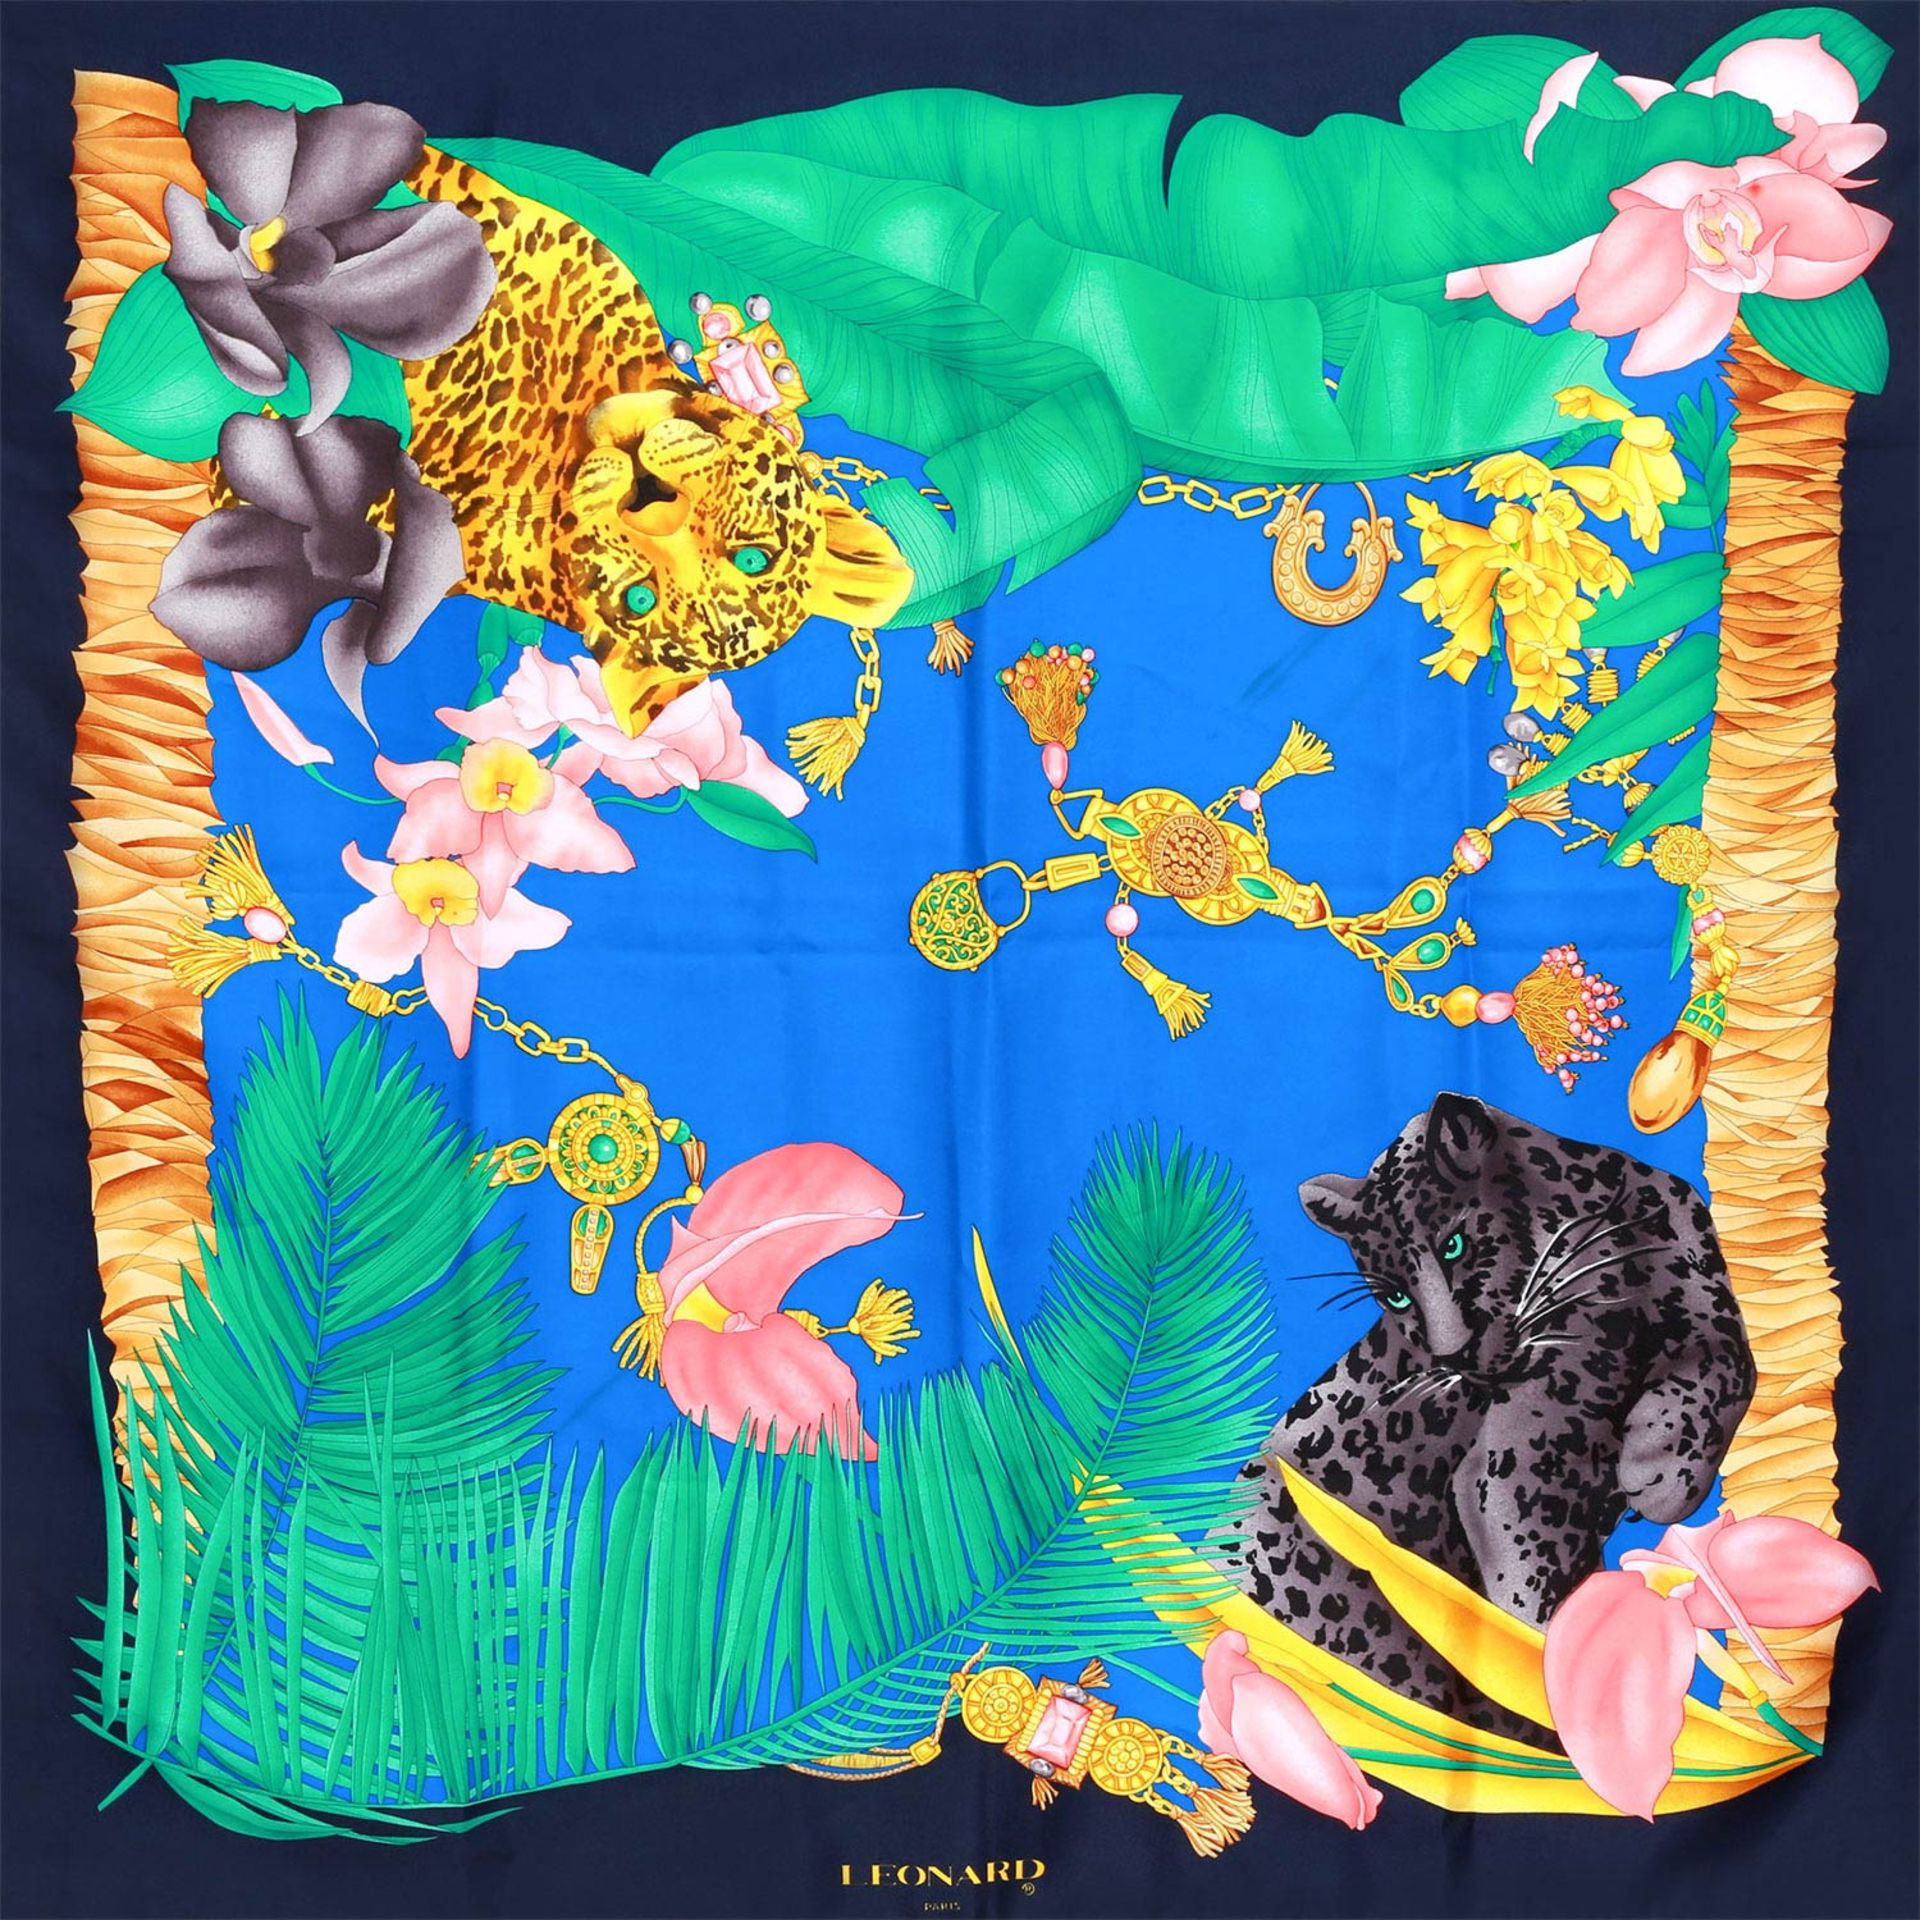 LEONARD Seidencarré. 100% Seide, farbenfrohes Motiv mit Panthern und floralen Mustern auf - Bild 3 aus 3